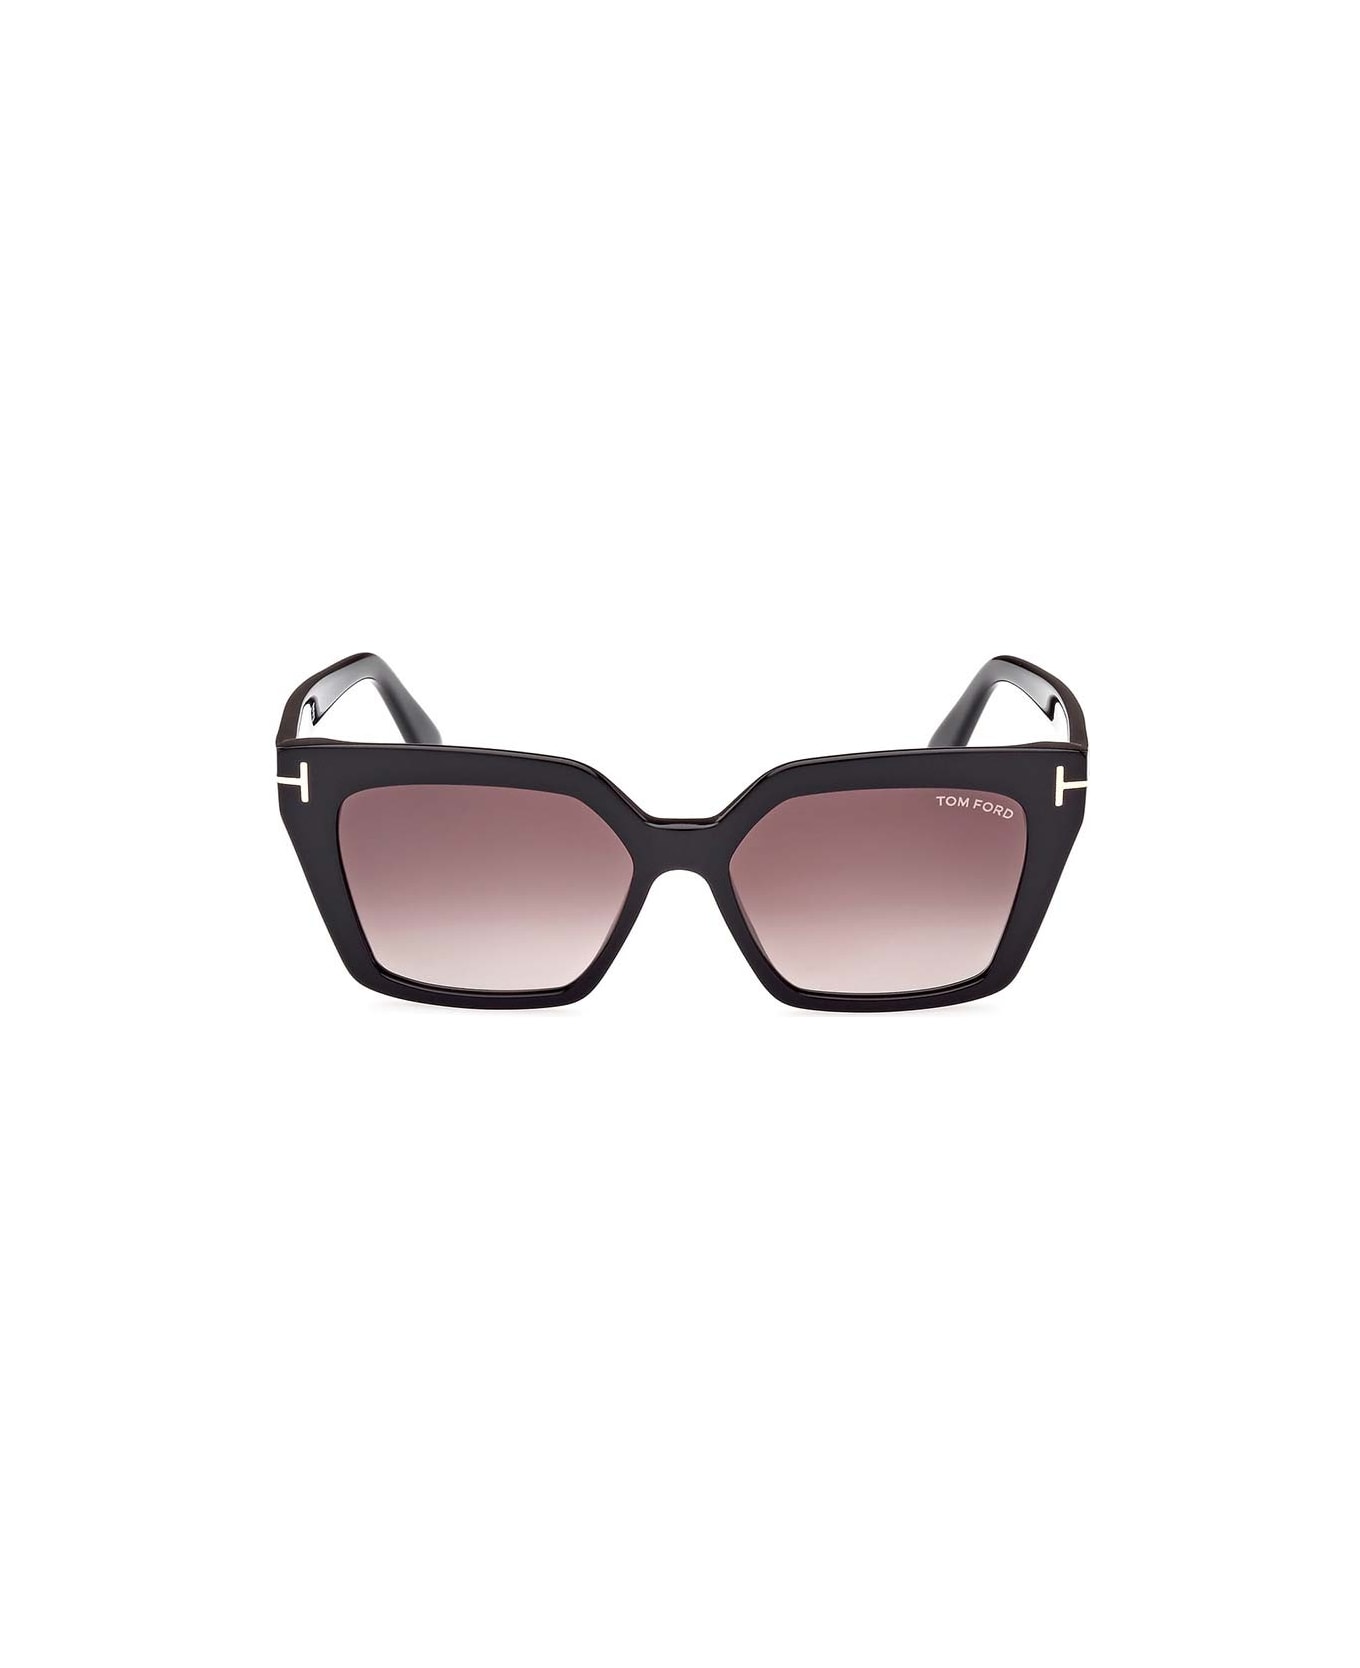 Tom Ford Eyewear Eyewear - Nero/Marrone